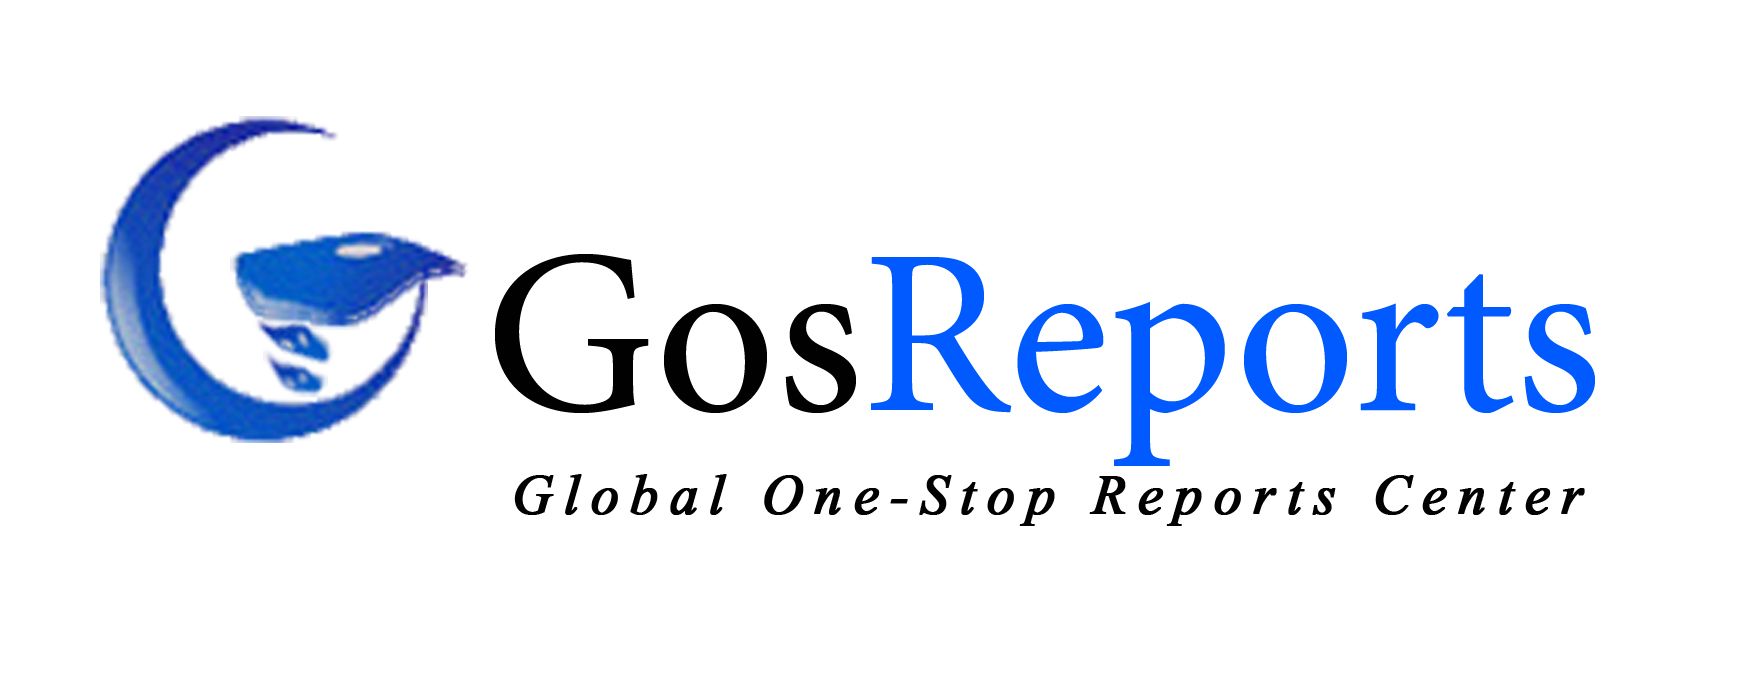 Gosreports Logo